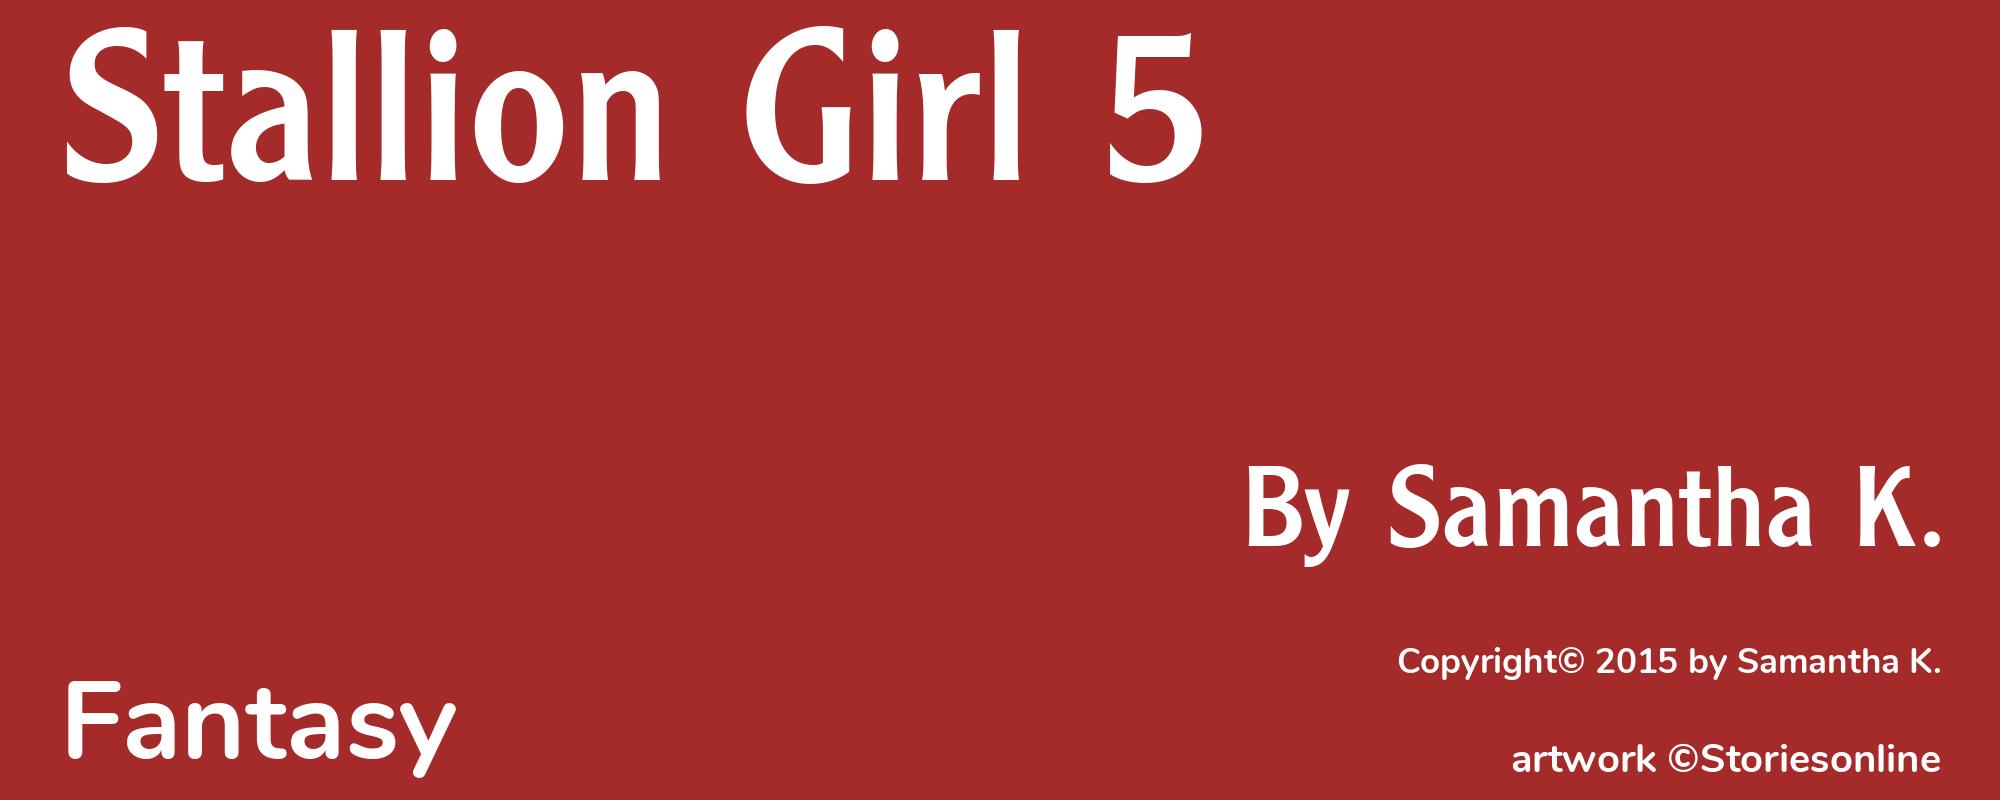 Stallion Girl 5 - Cover